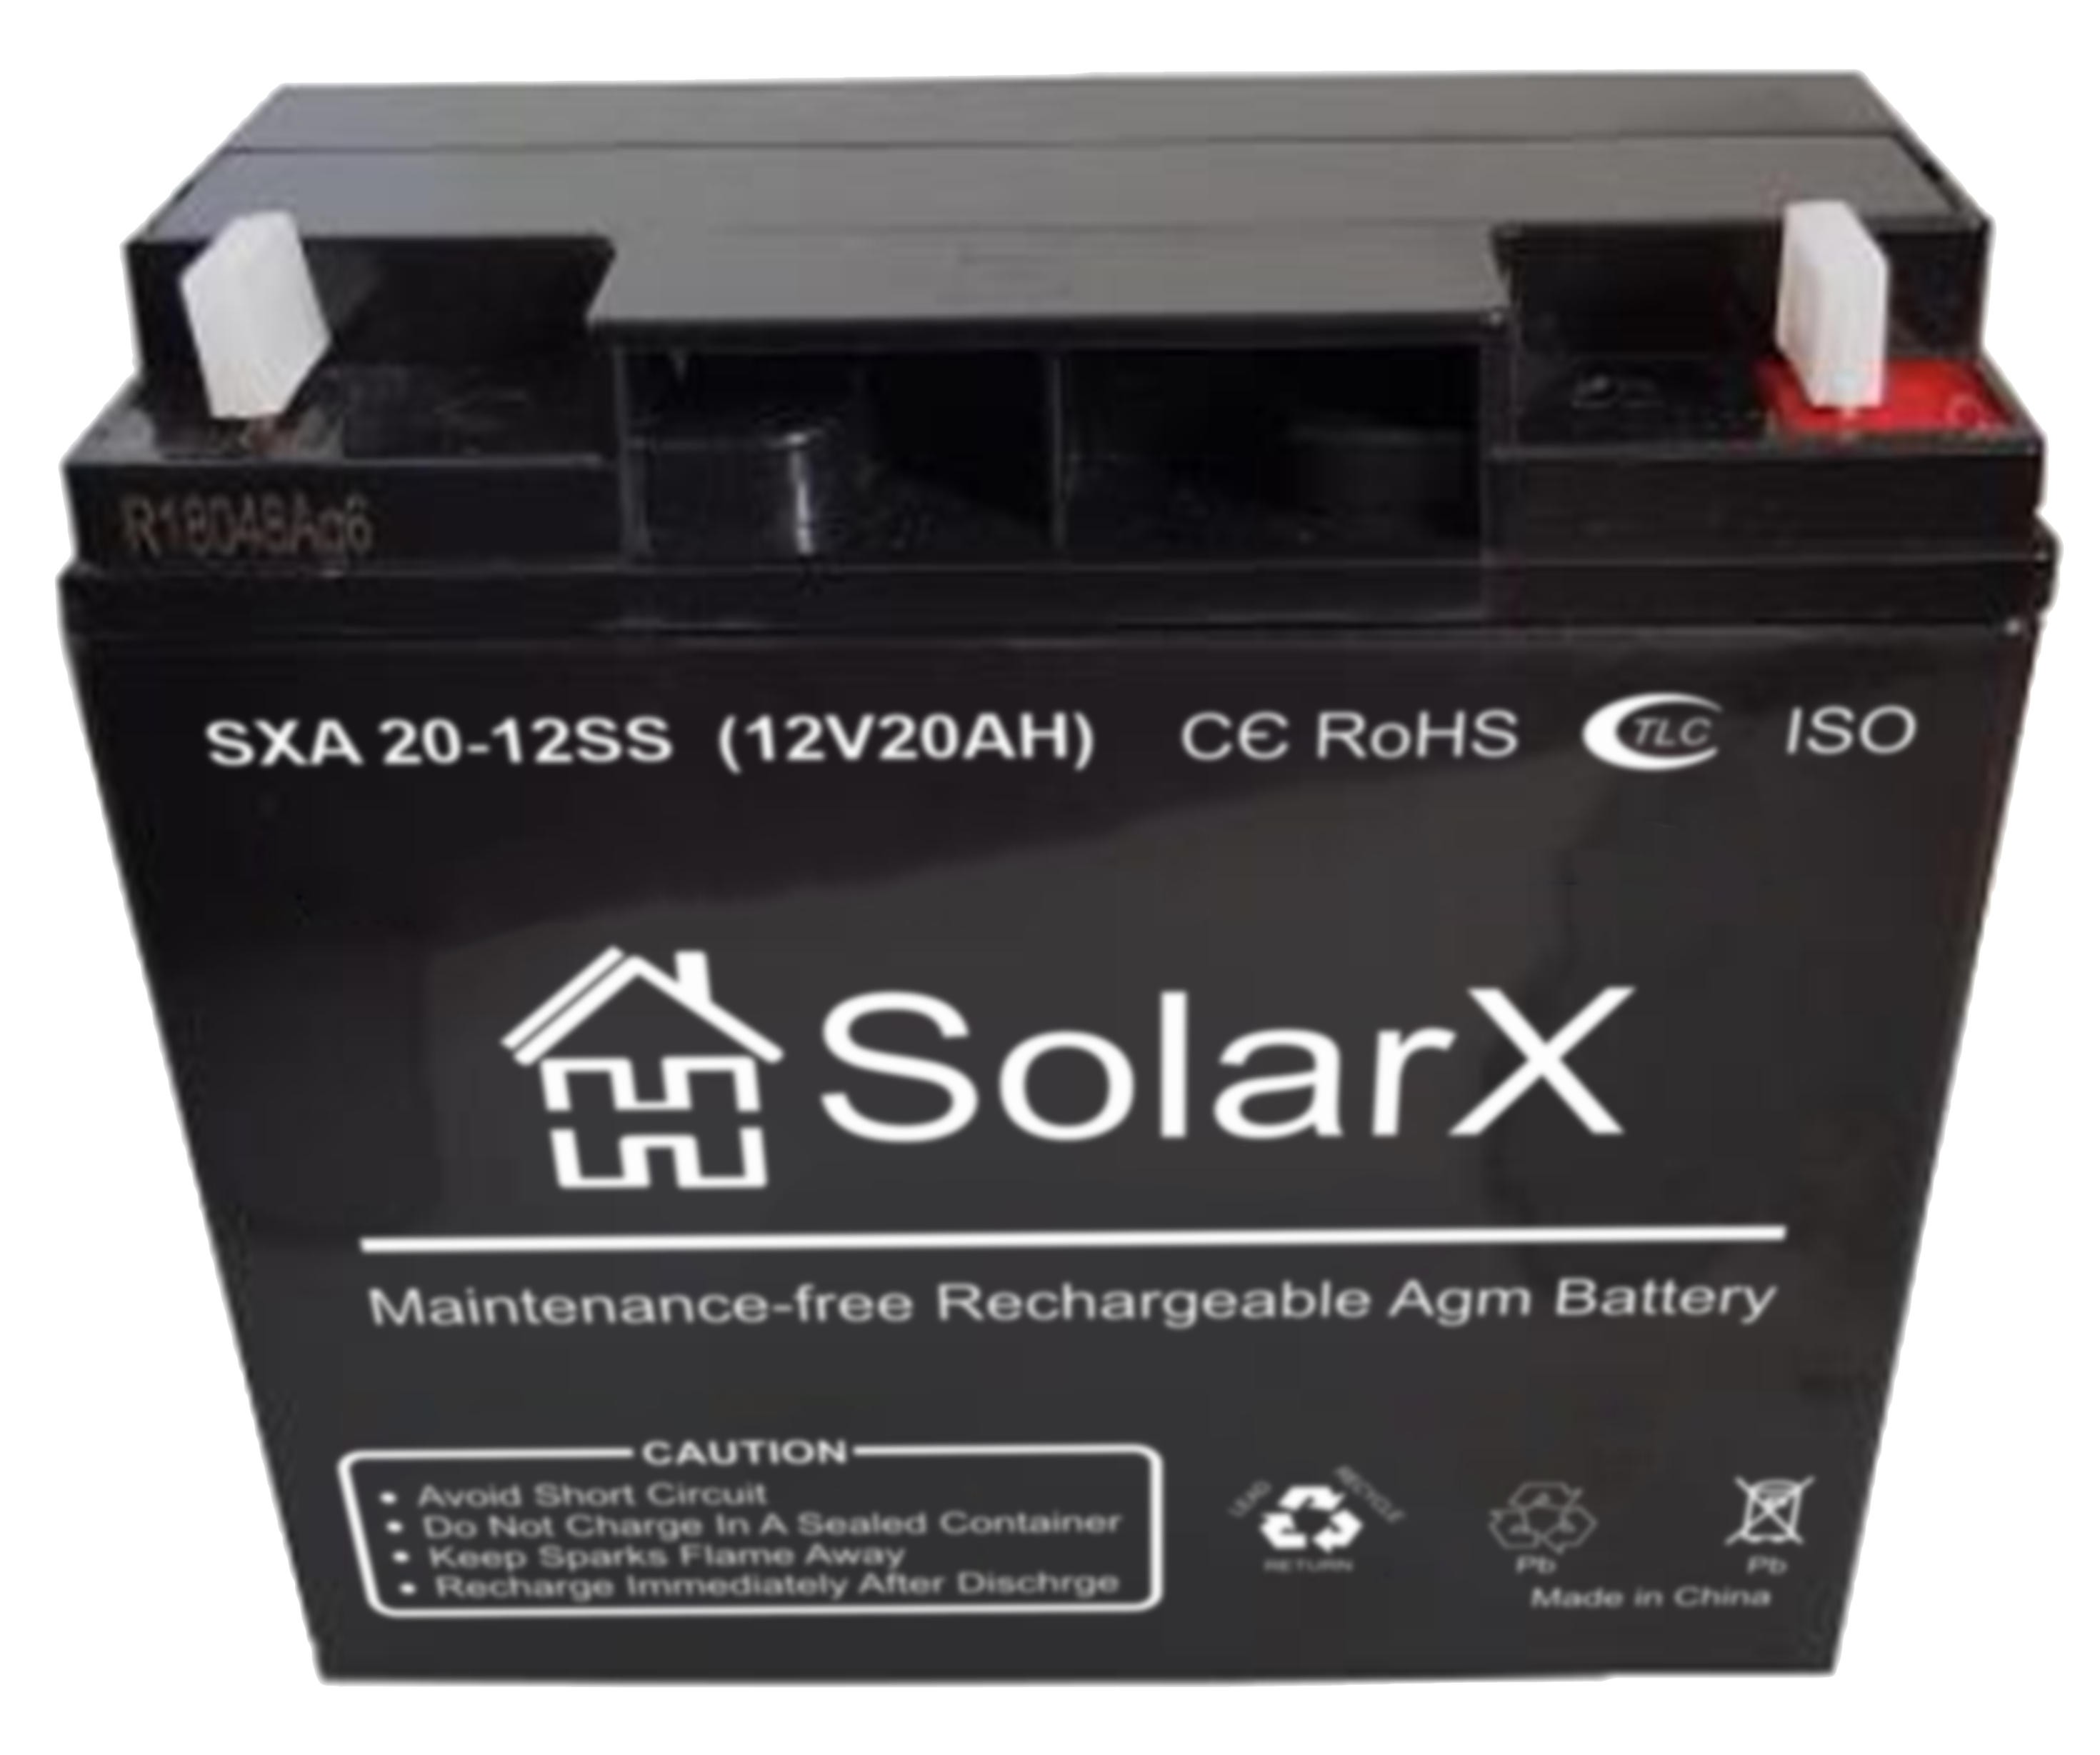 Solarx sxa 20 12ss